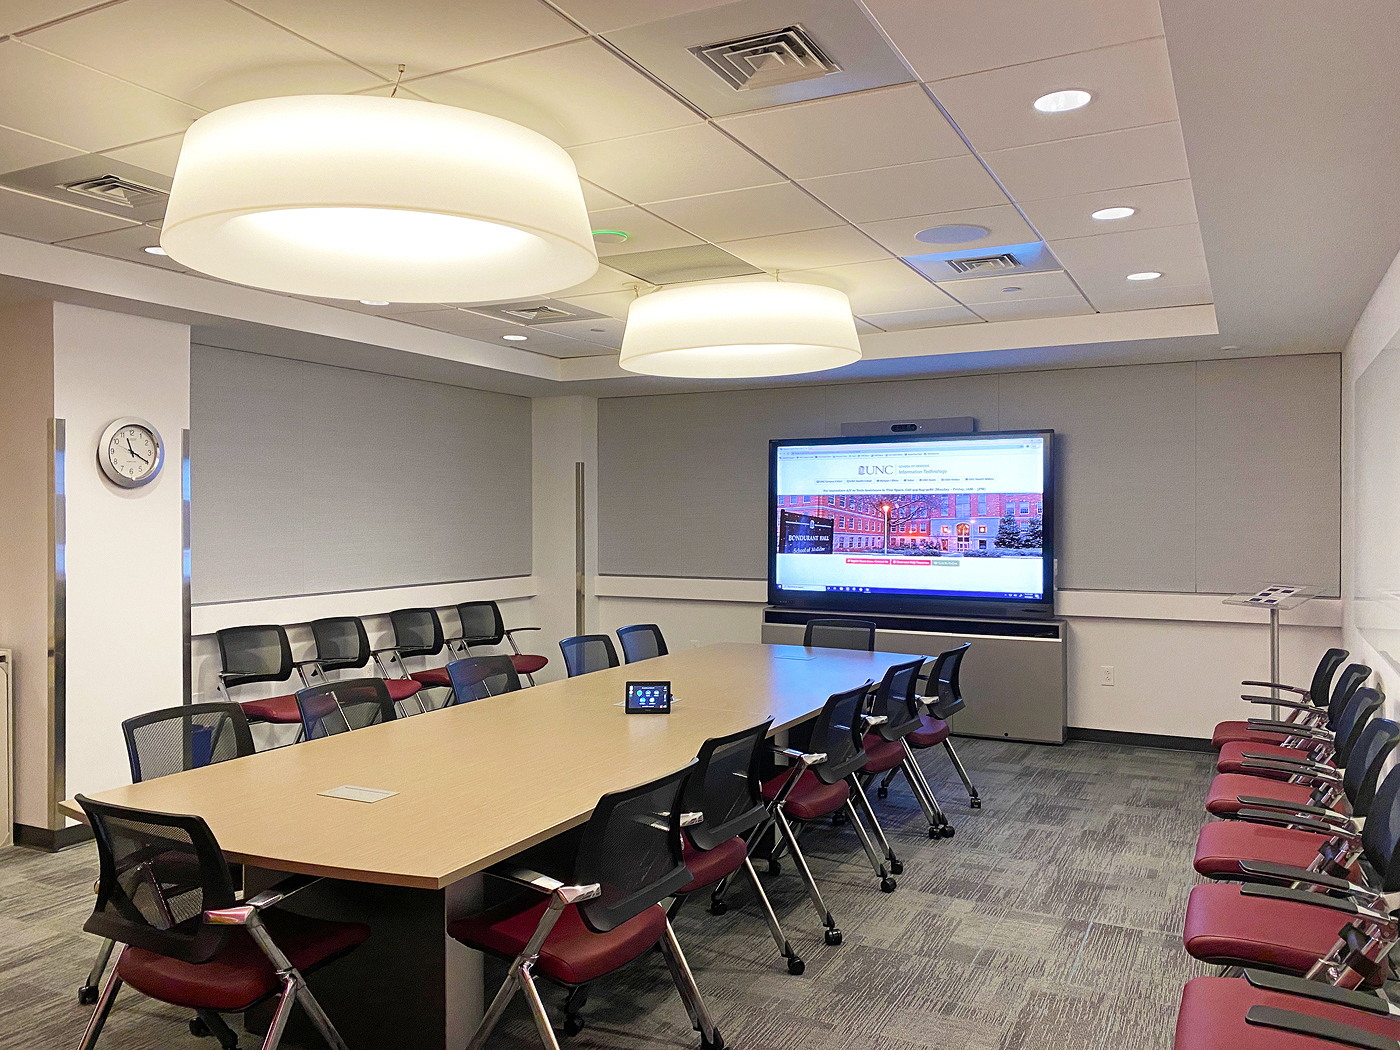 两间全新的会议室通过 NAV AVoIP 与教学中心互连，为交流协作拓展全新的空间。图片由 Heidi Grassley (集成商 ClarkPowell) 提供